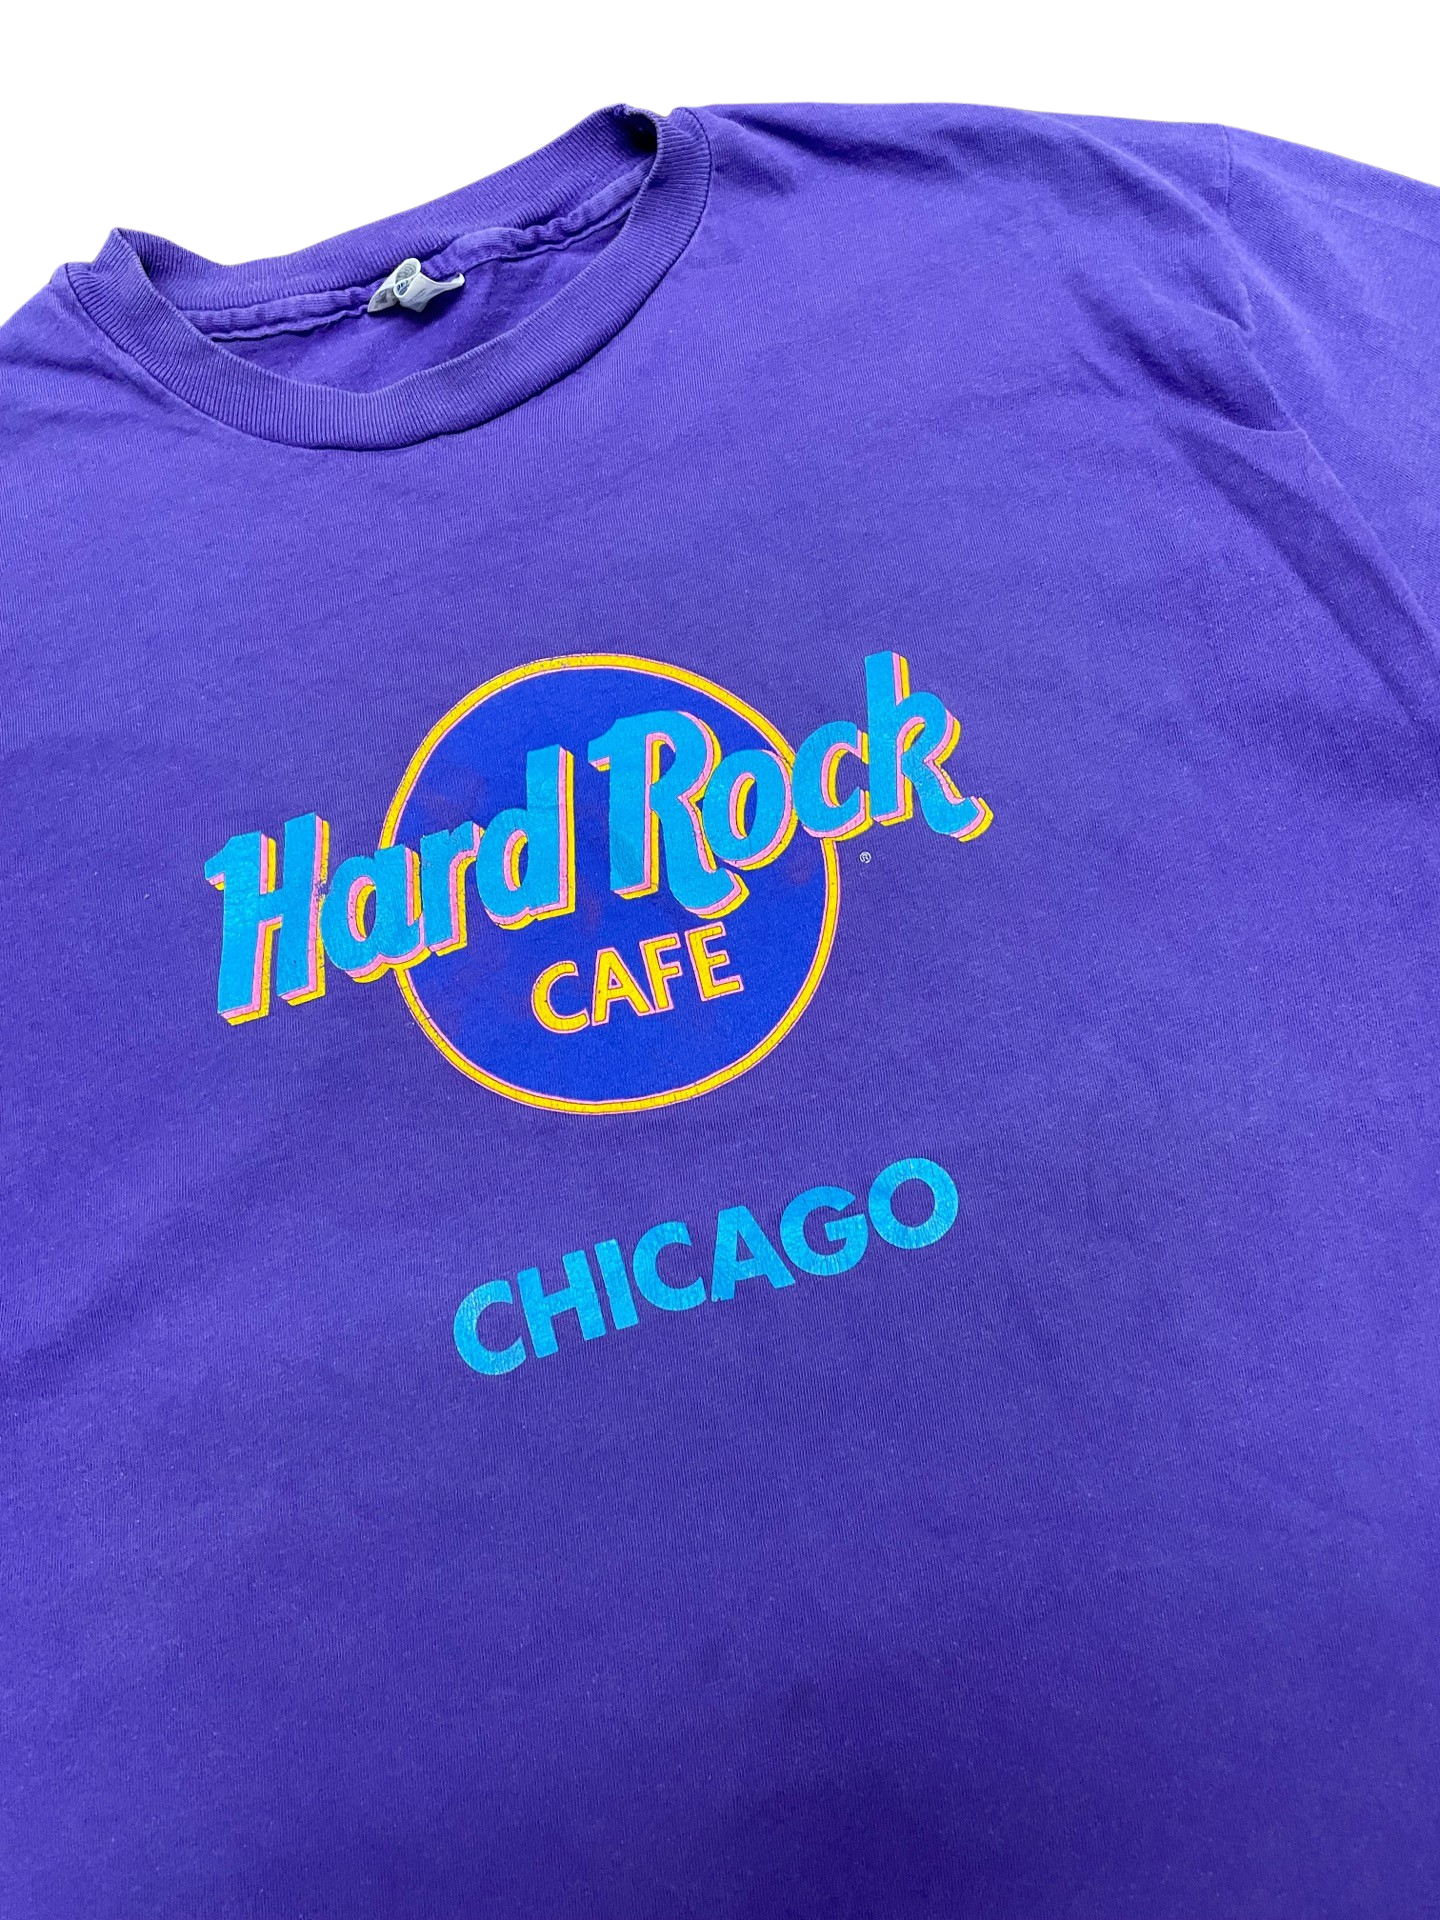 Vintage Hard Rock Cafe t-shirt